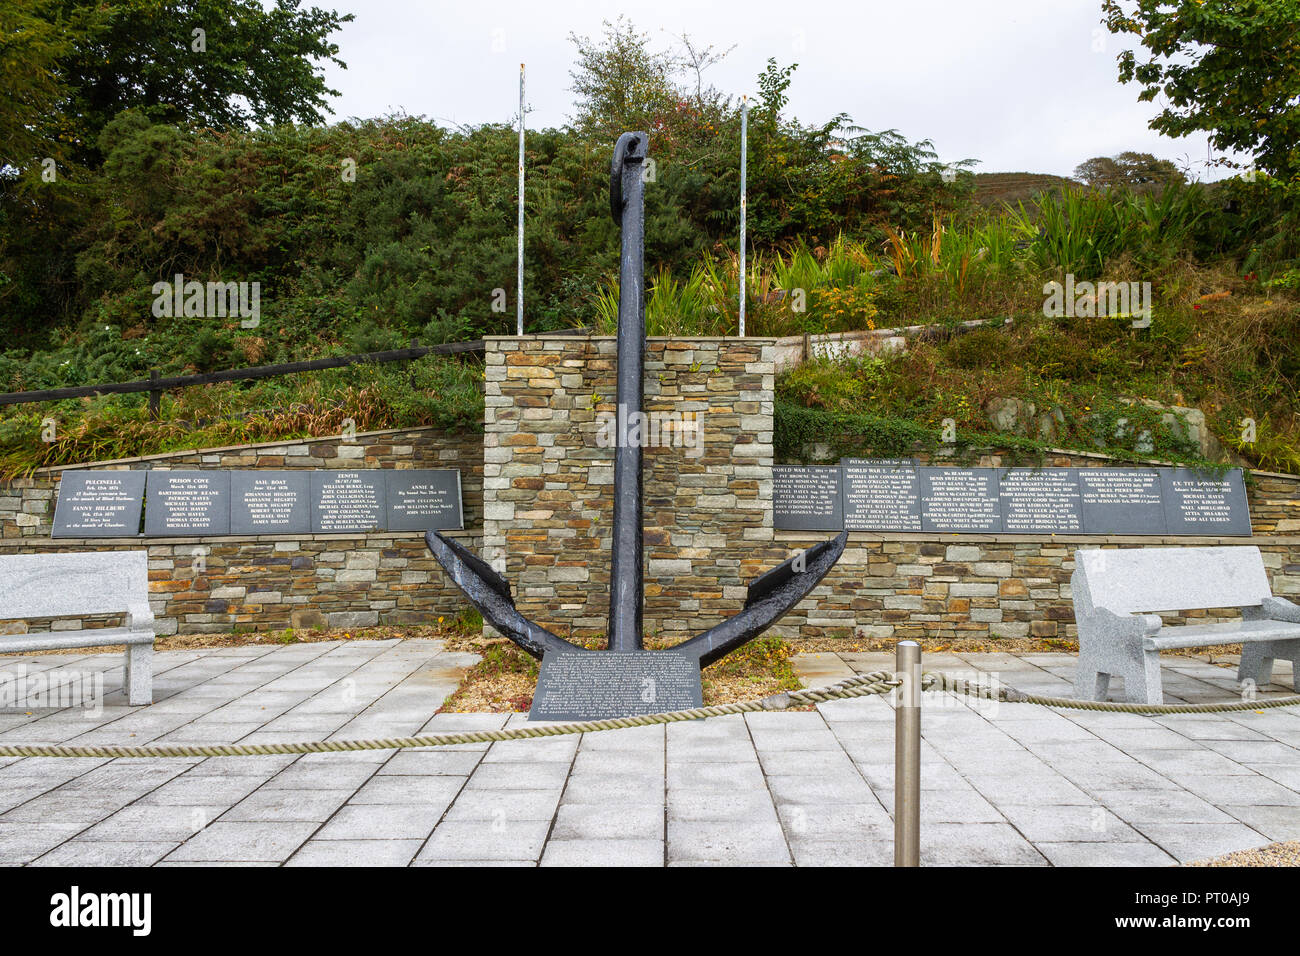 Ricordo monumento dedicato ai pescatori e marinai dispersi in mare unione hall West Cork in Irlanda Foto Stock